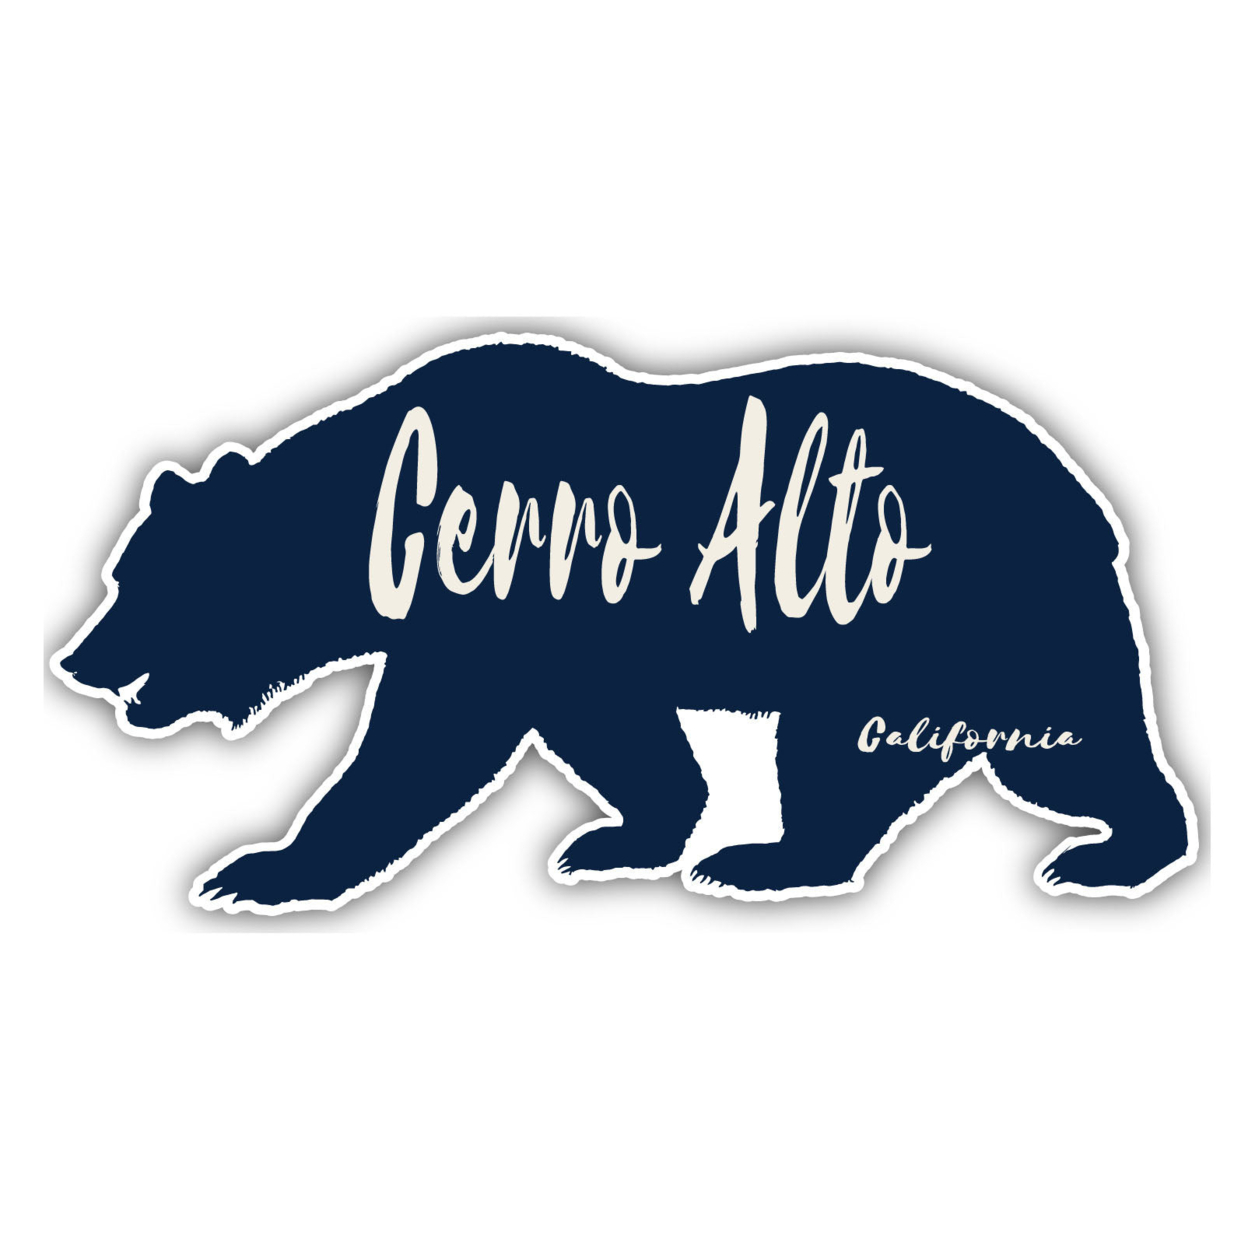 Cerro Alto California Souvenir Decorative Stickers (Choose Theme And Size) - Single Unit, 6-Inch, Bear